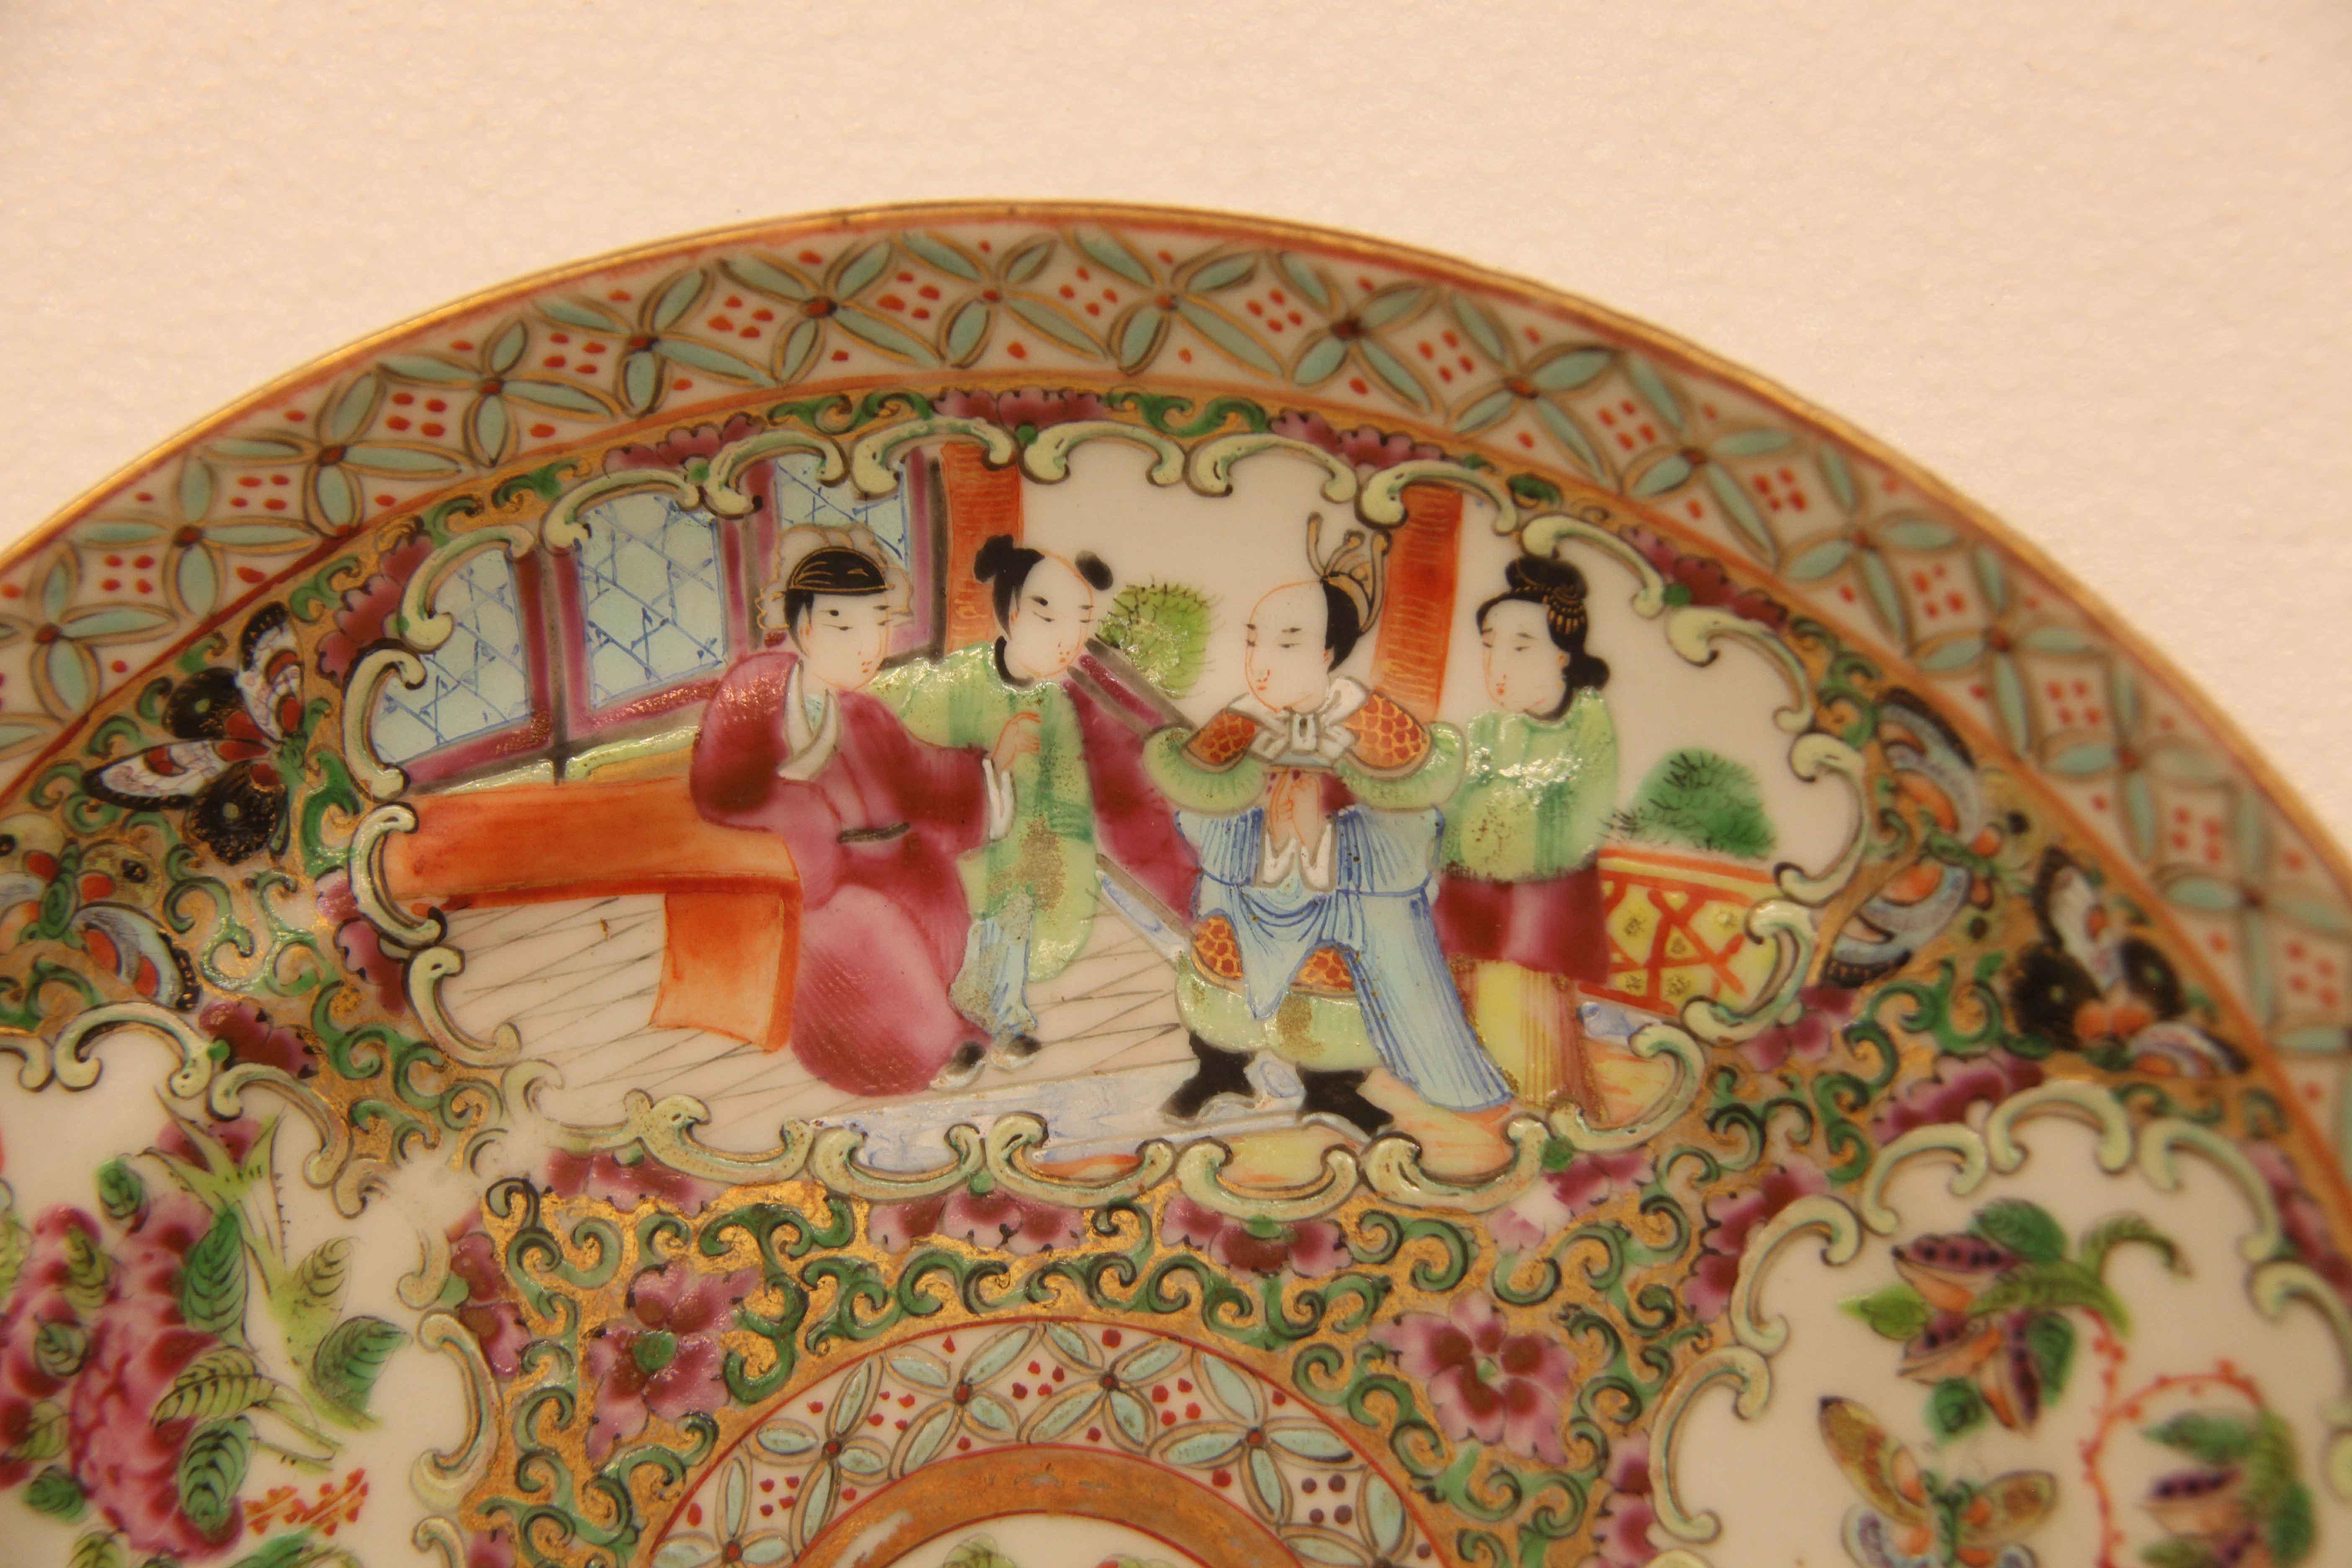 Paar chinesische Rosenmedaillonteller, der Rand mit stilisierten Blumen in hellem Türkis, innen abwechselnd Tafeln mit rosafarbenen Blumen und Schmetterlingen, eine Tafel mit vier Frauen, die andere mit Blumen und Vögeln;  das zentrale Medaillon mit